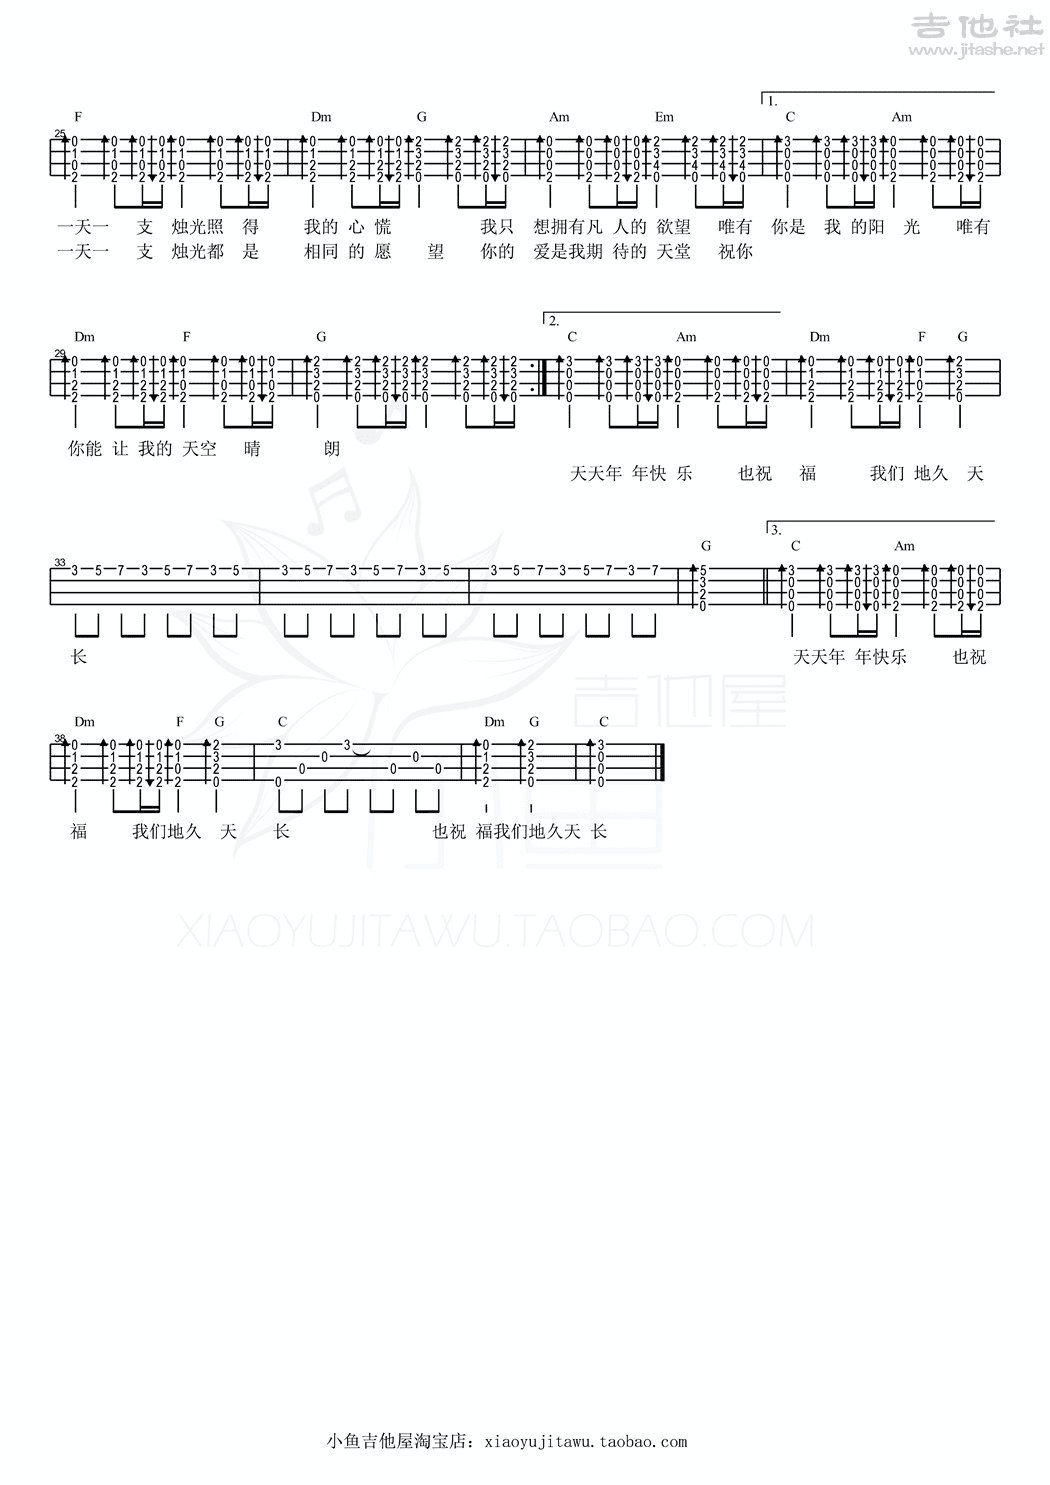 任贤齐成名曲吉他谱《烛光》-吉他曲谱 - 乐器学习网